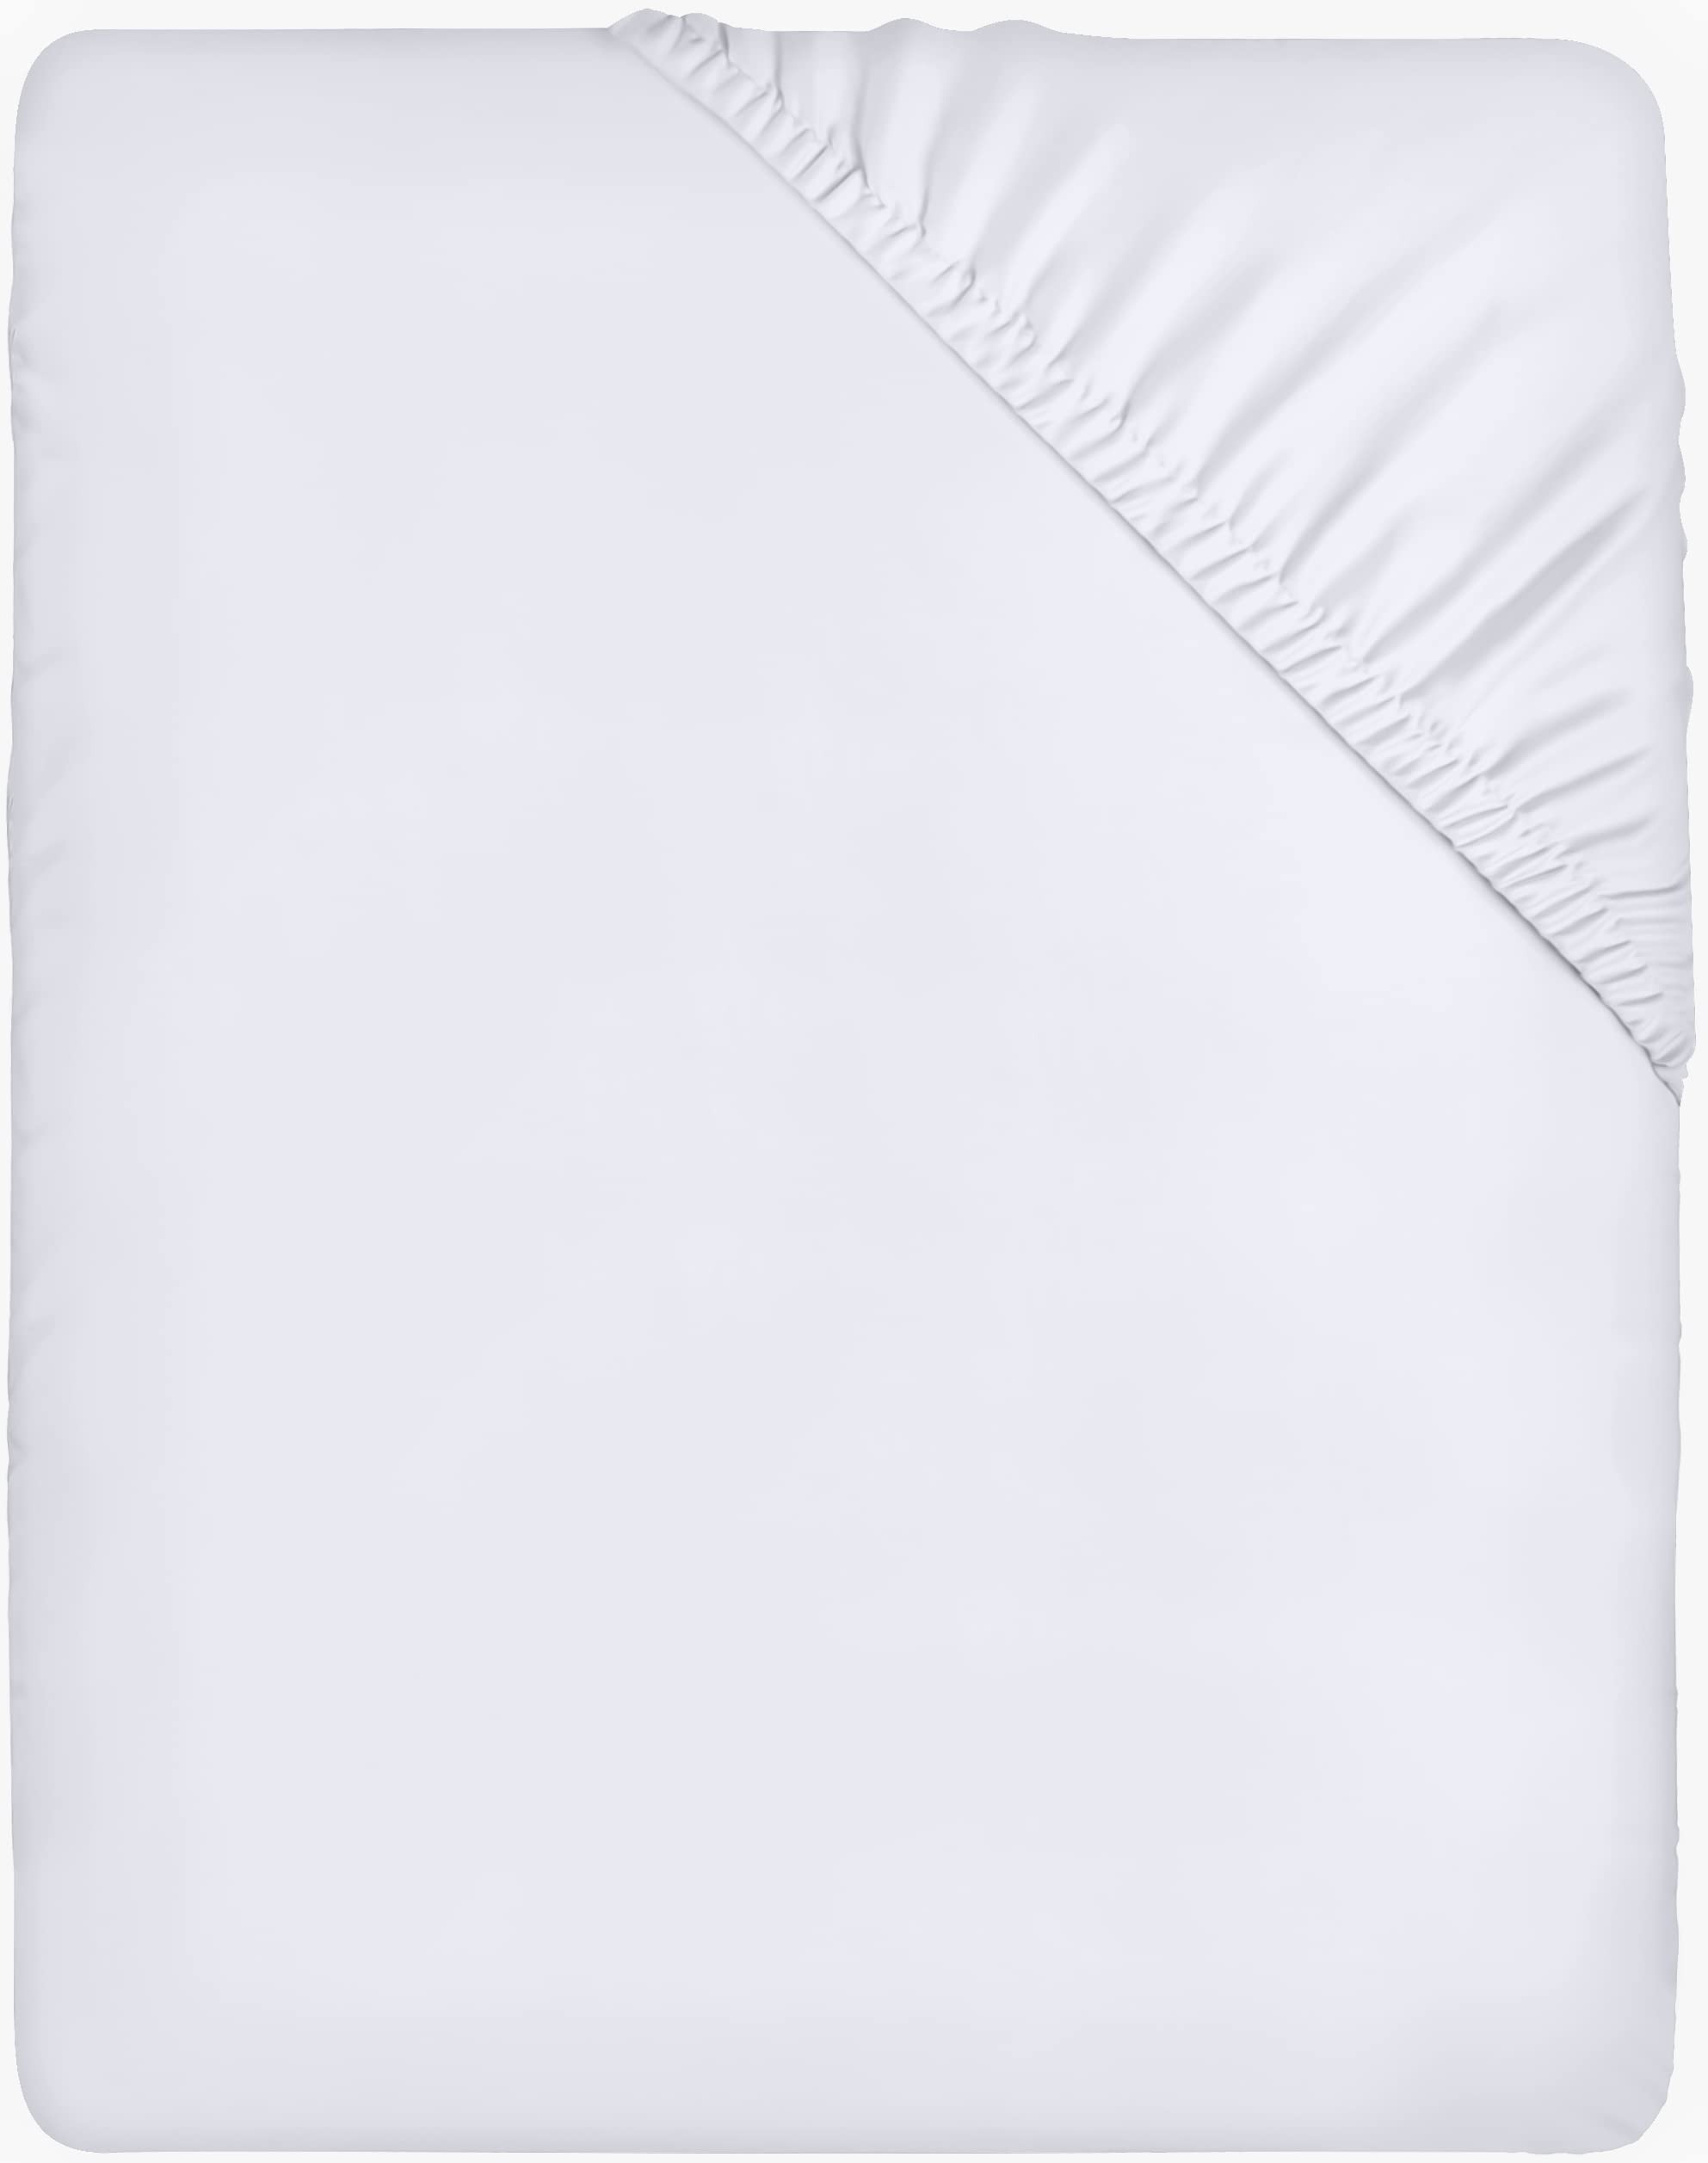 chic  Utopia Bedding Drap Housse - Blanc, 100 x 200 cm - Coupes de 35 cm pour Matelas épais - Microfibre brossée xEVFshVqL bien vendre